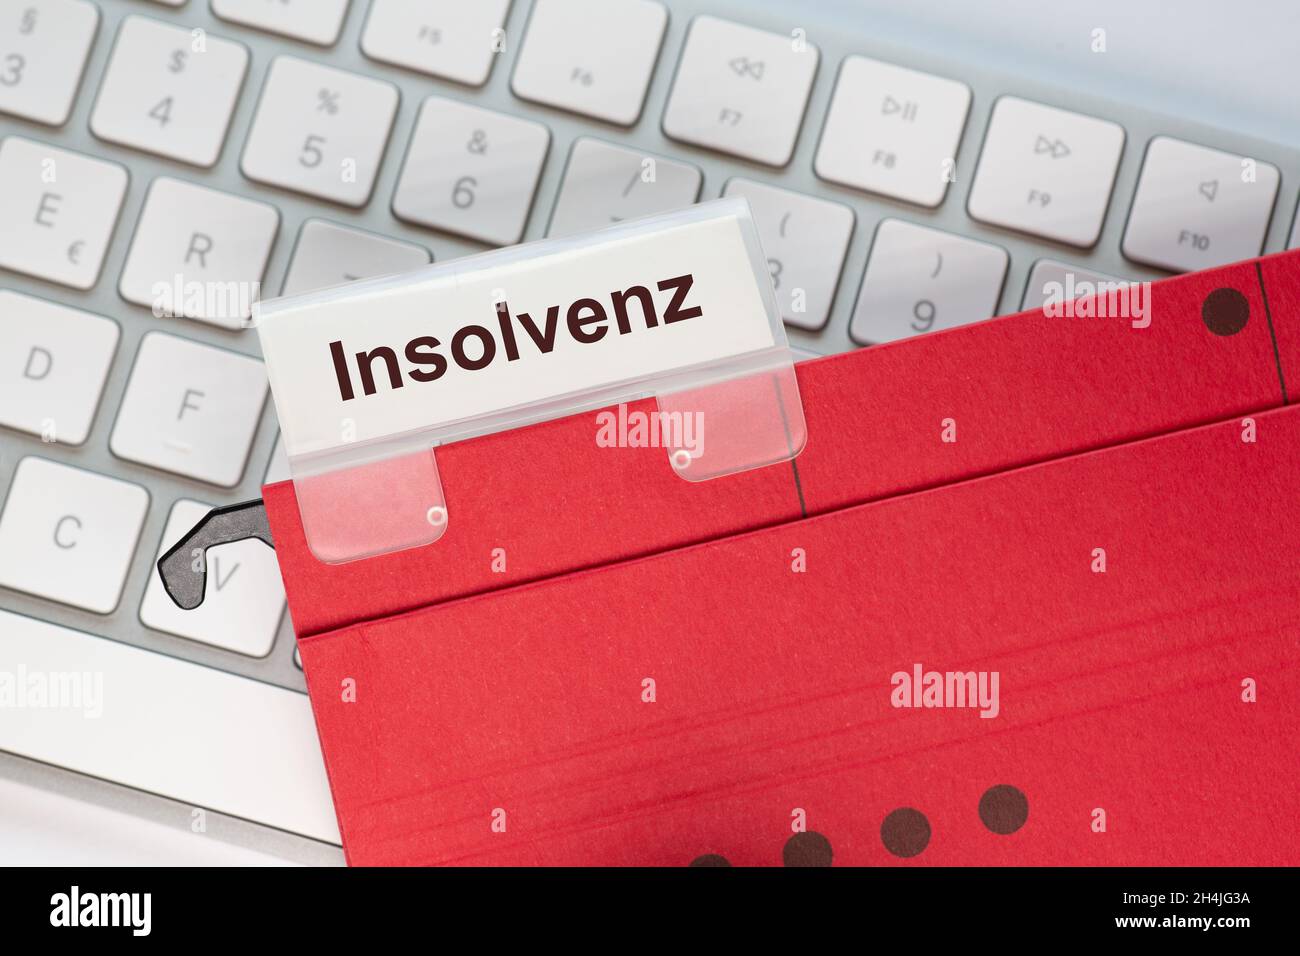 Le mot allemand pour insolvabilité peut être vu sur l'étiquette d'un dossier suspendu rouge.Le dossier d'affichage se trouve sur un clavier d'ordinateur. Banque D'Images